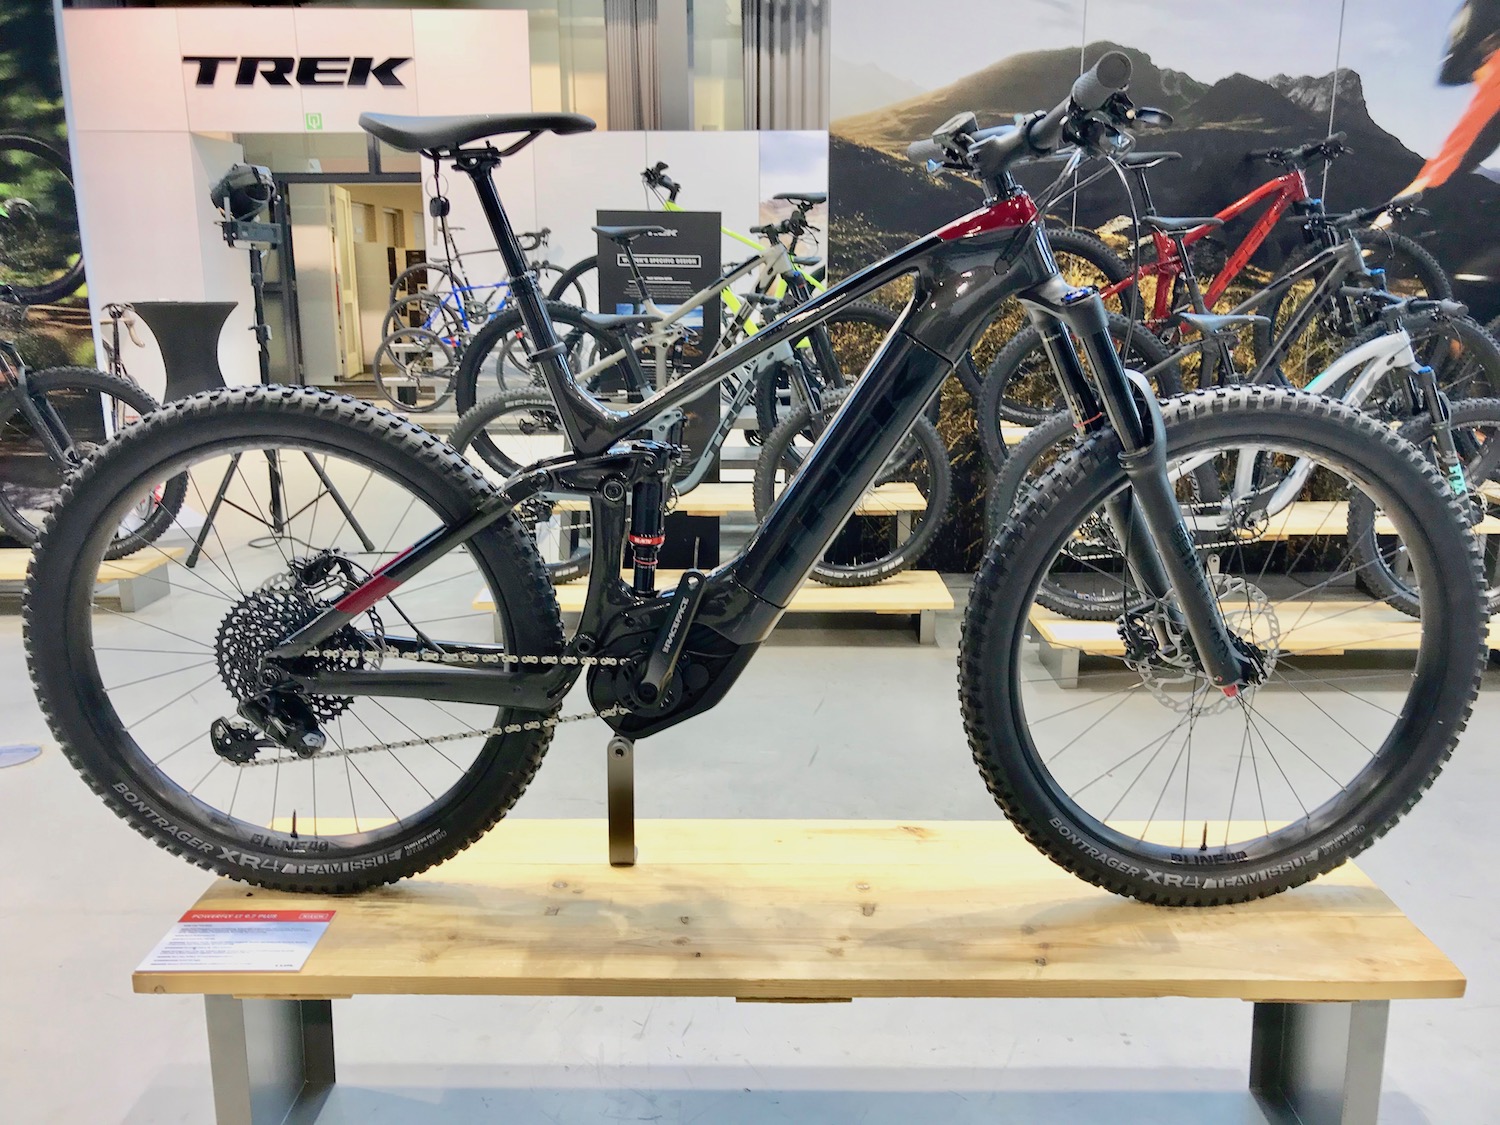 Overweldigen haag draad TREK voert productiecapaciteit e-bikes verder op - NieuwsFiets Media &  Events